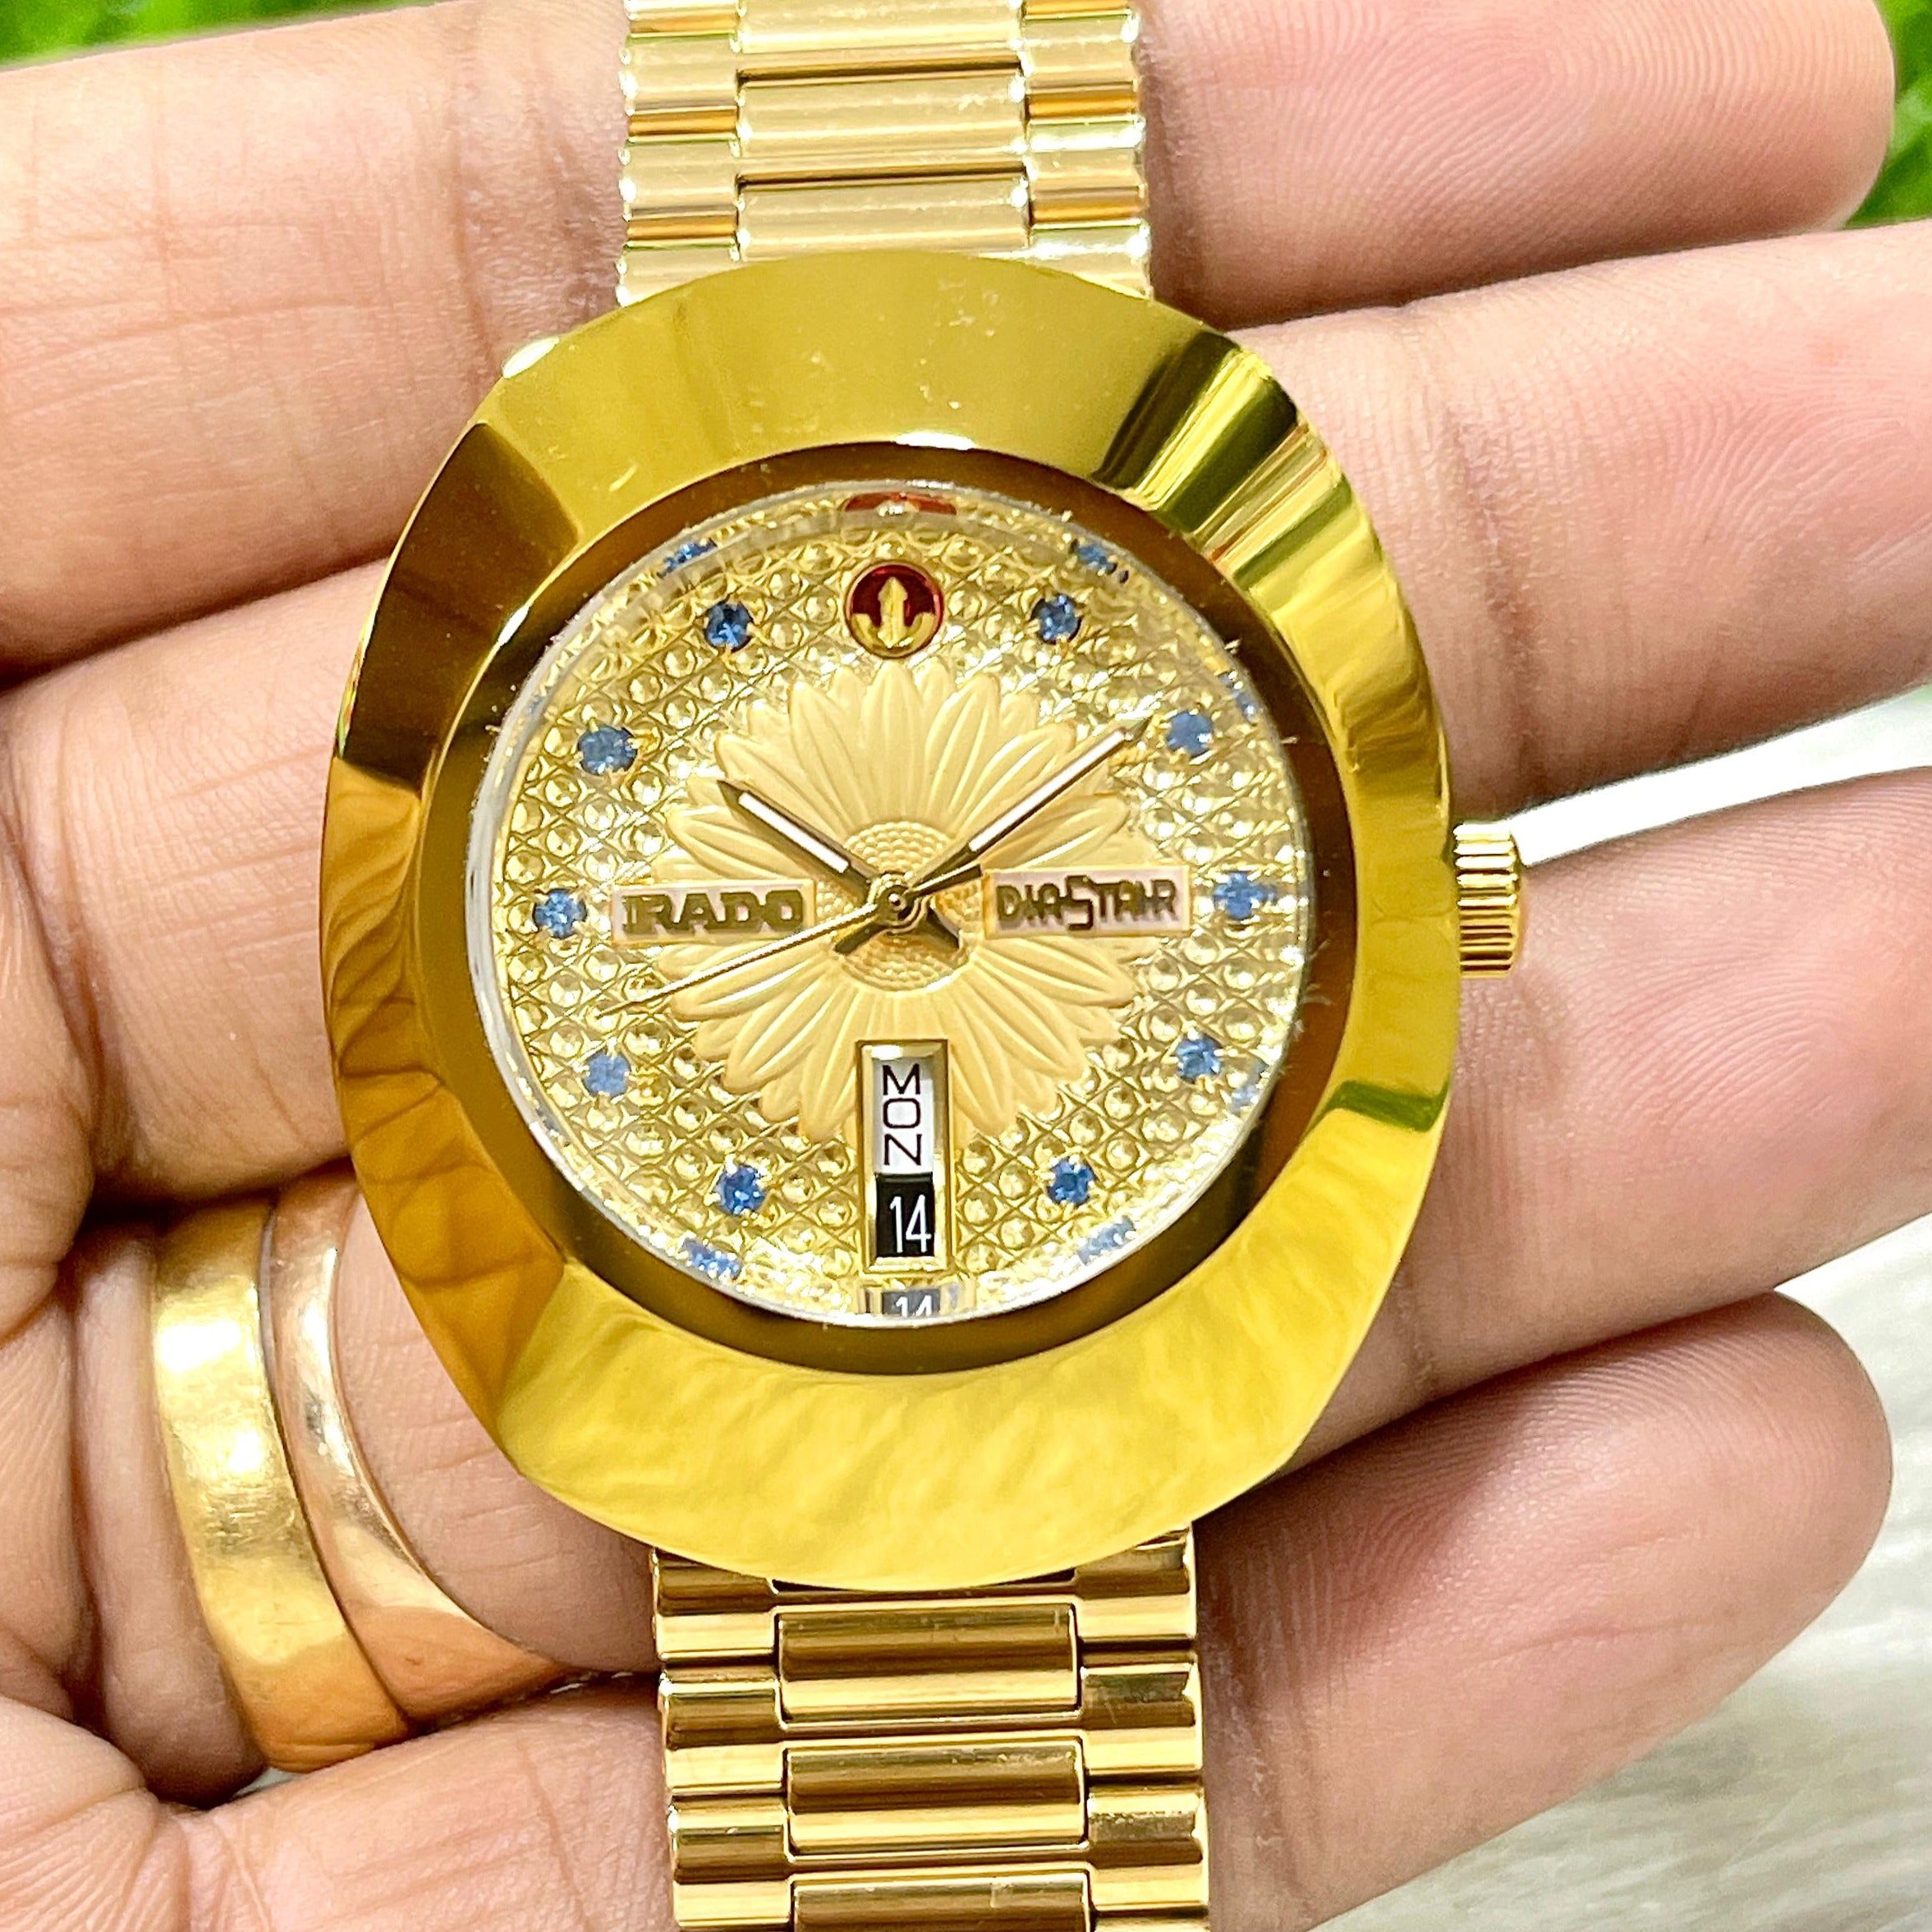 Rd premium luxury watch - AmazingBaba